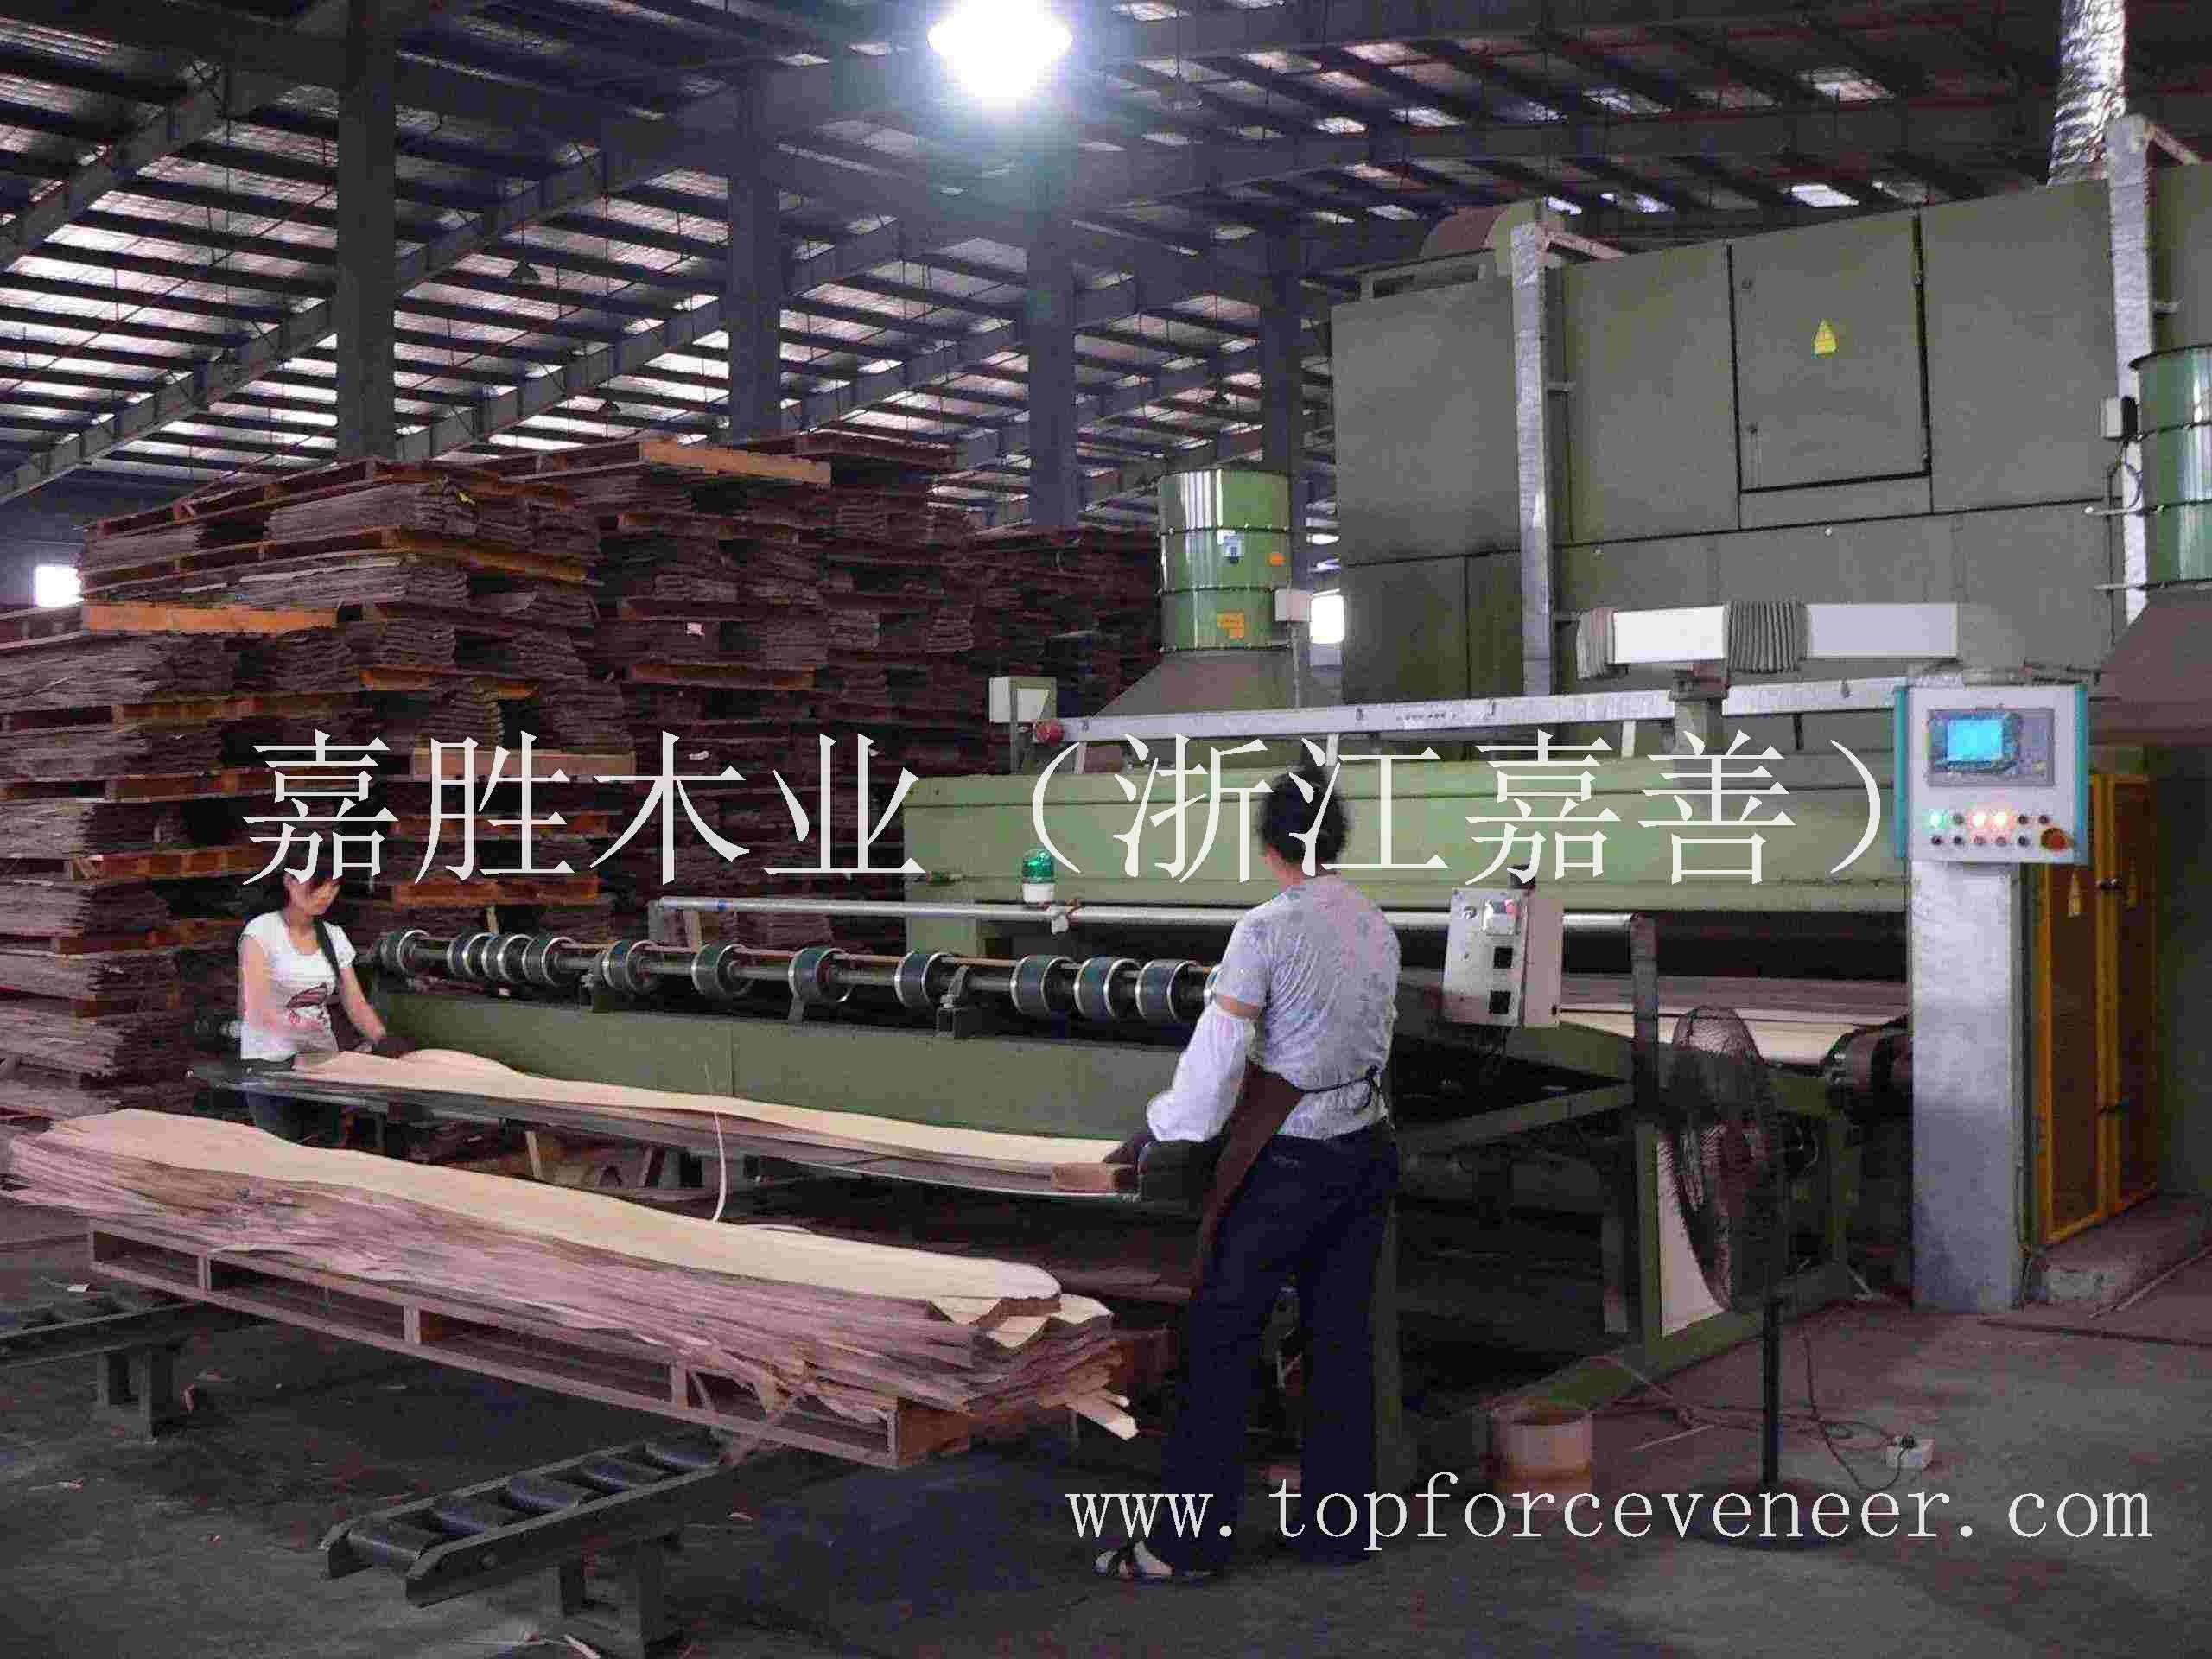 嘉善木业供应商 ZheJiang JiaXing JiaShan Quality Decent Logs and Veneer Supplier and Factory